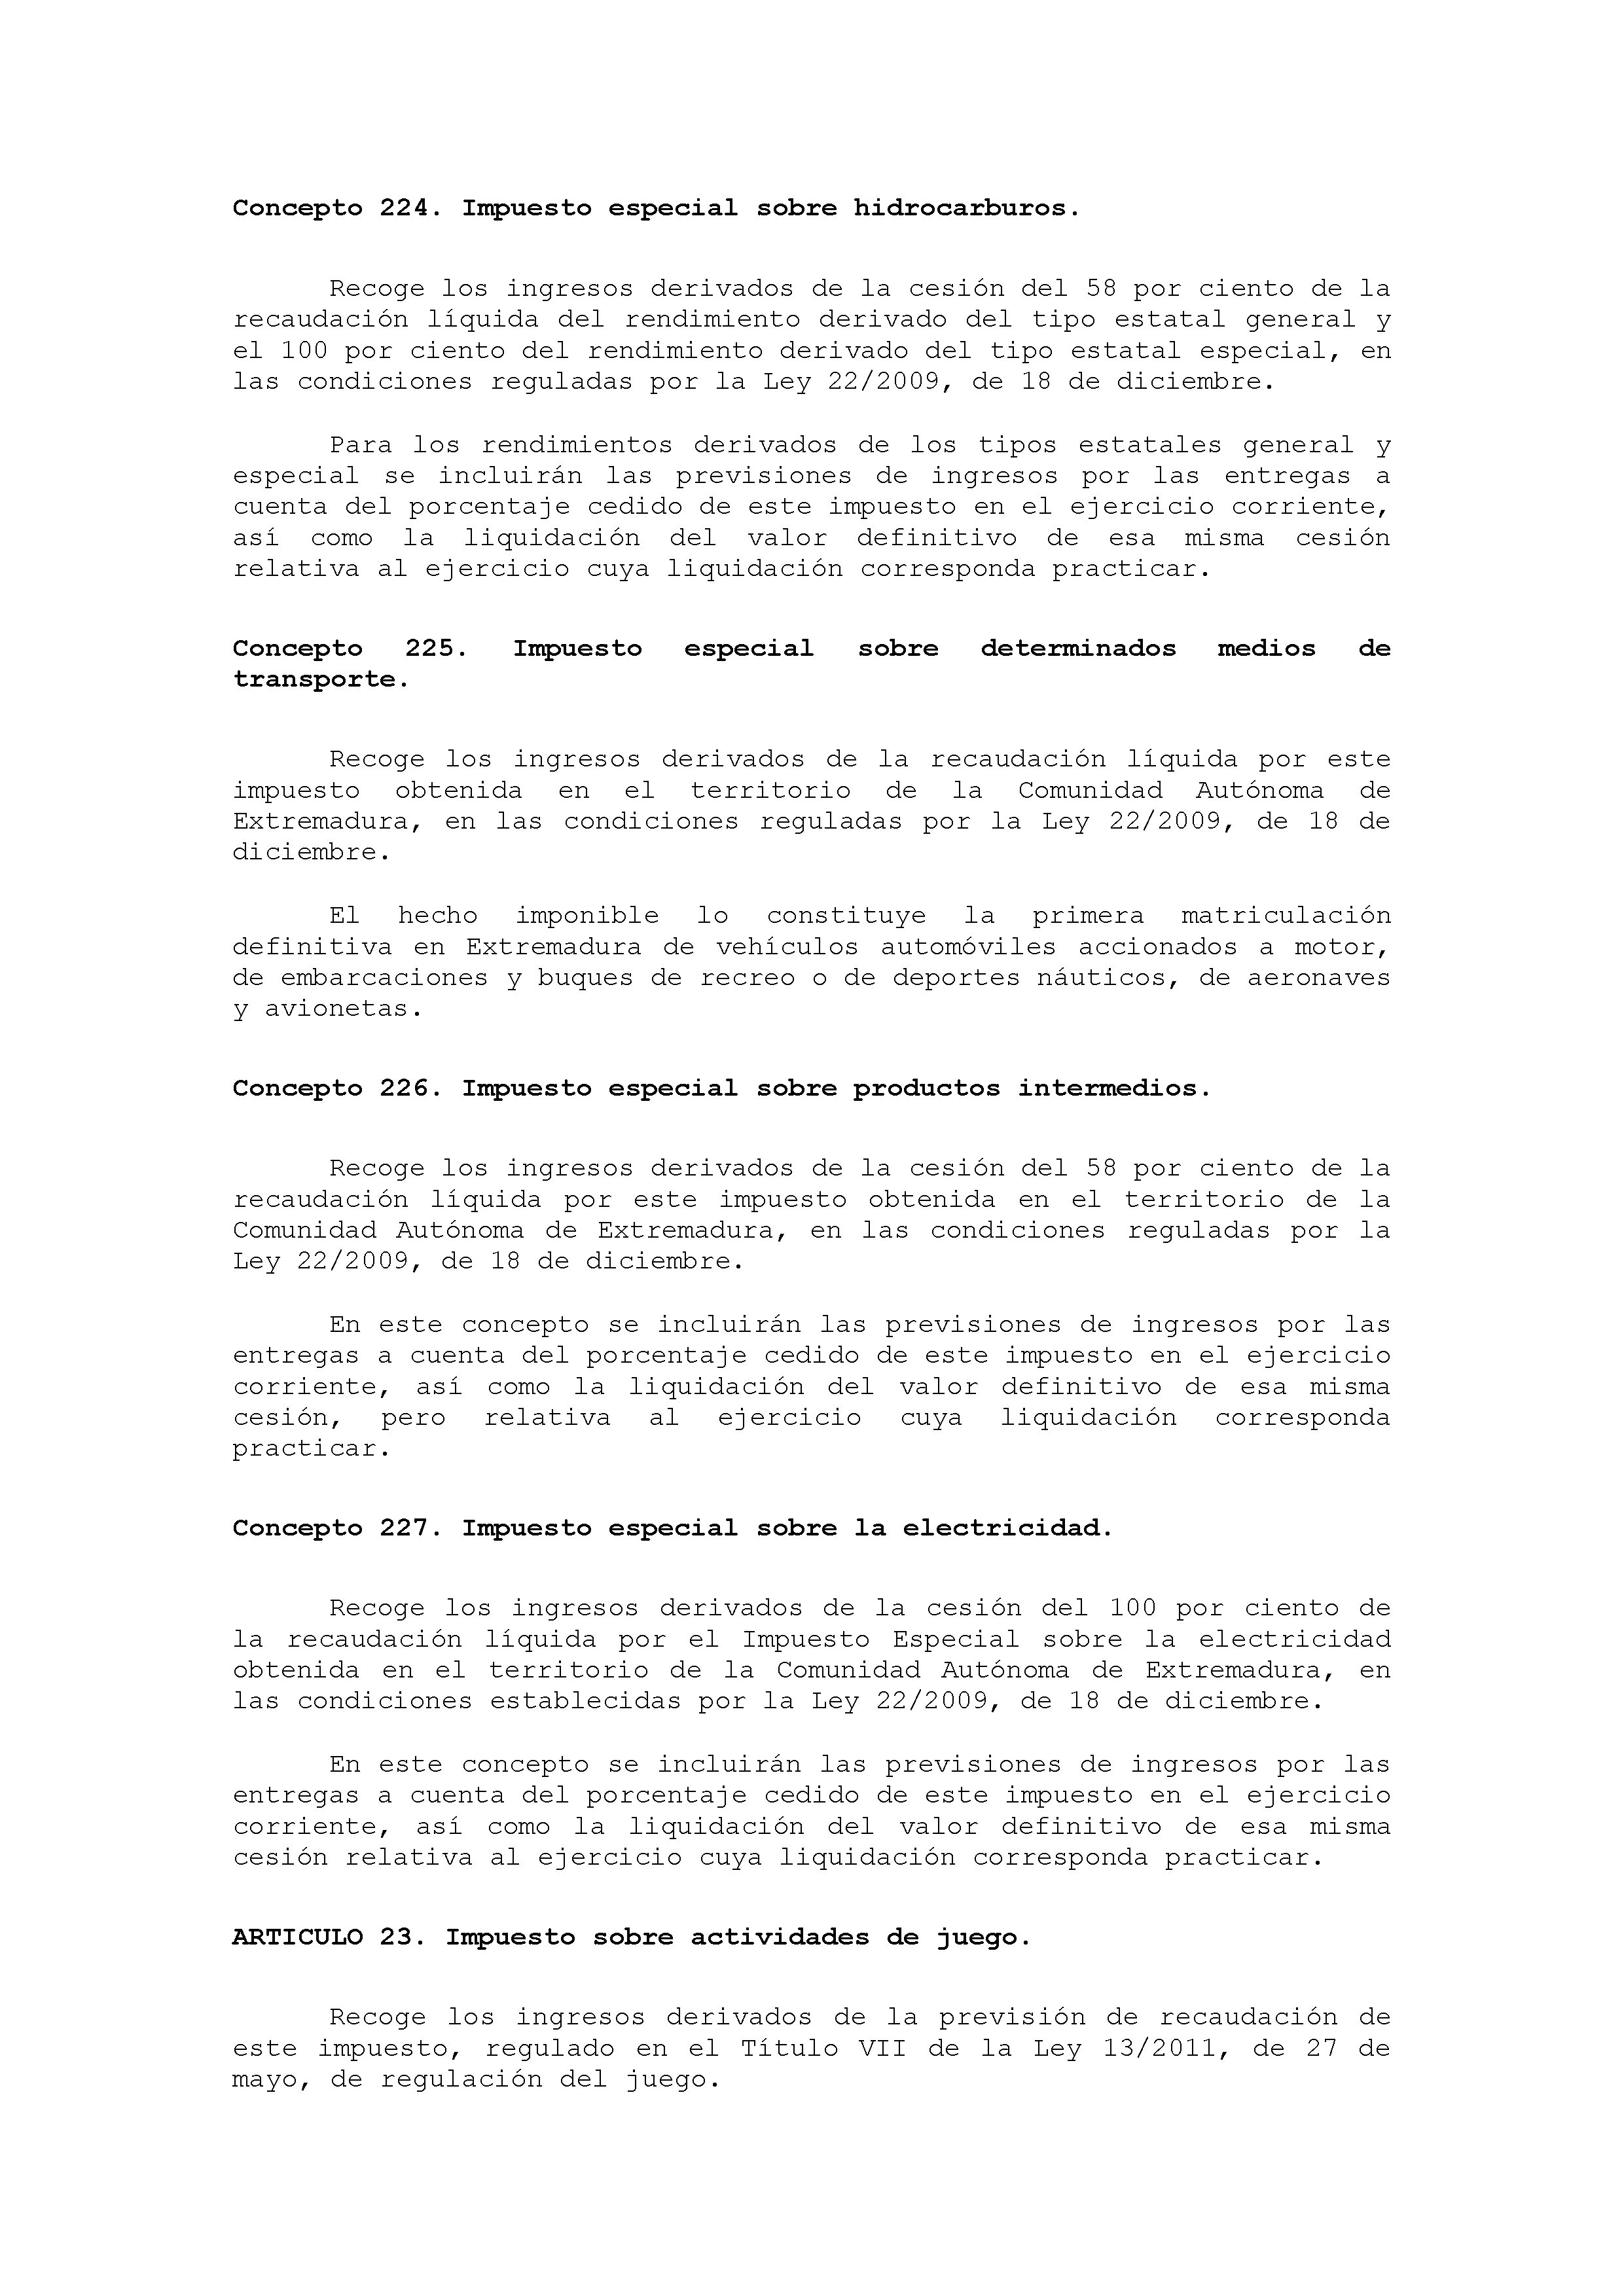 ANEXO VIII CÓDIGO DE LA CLASIFICACIÓN ECONÓMICA DE LOS INGRESOS PÚBLICOS Pag 7